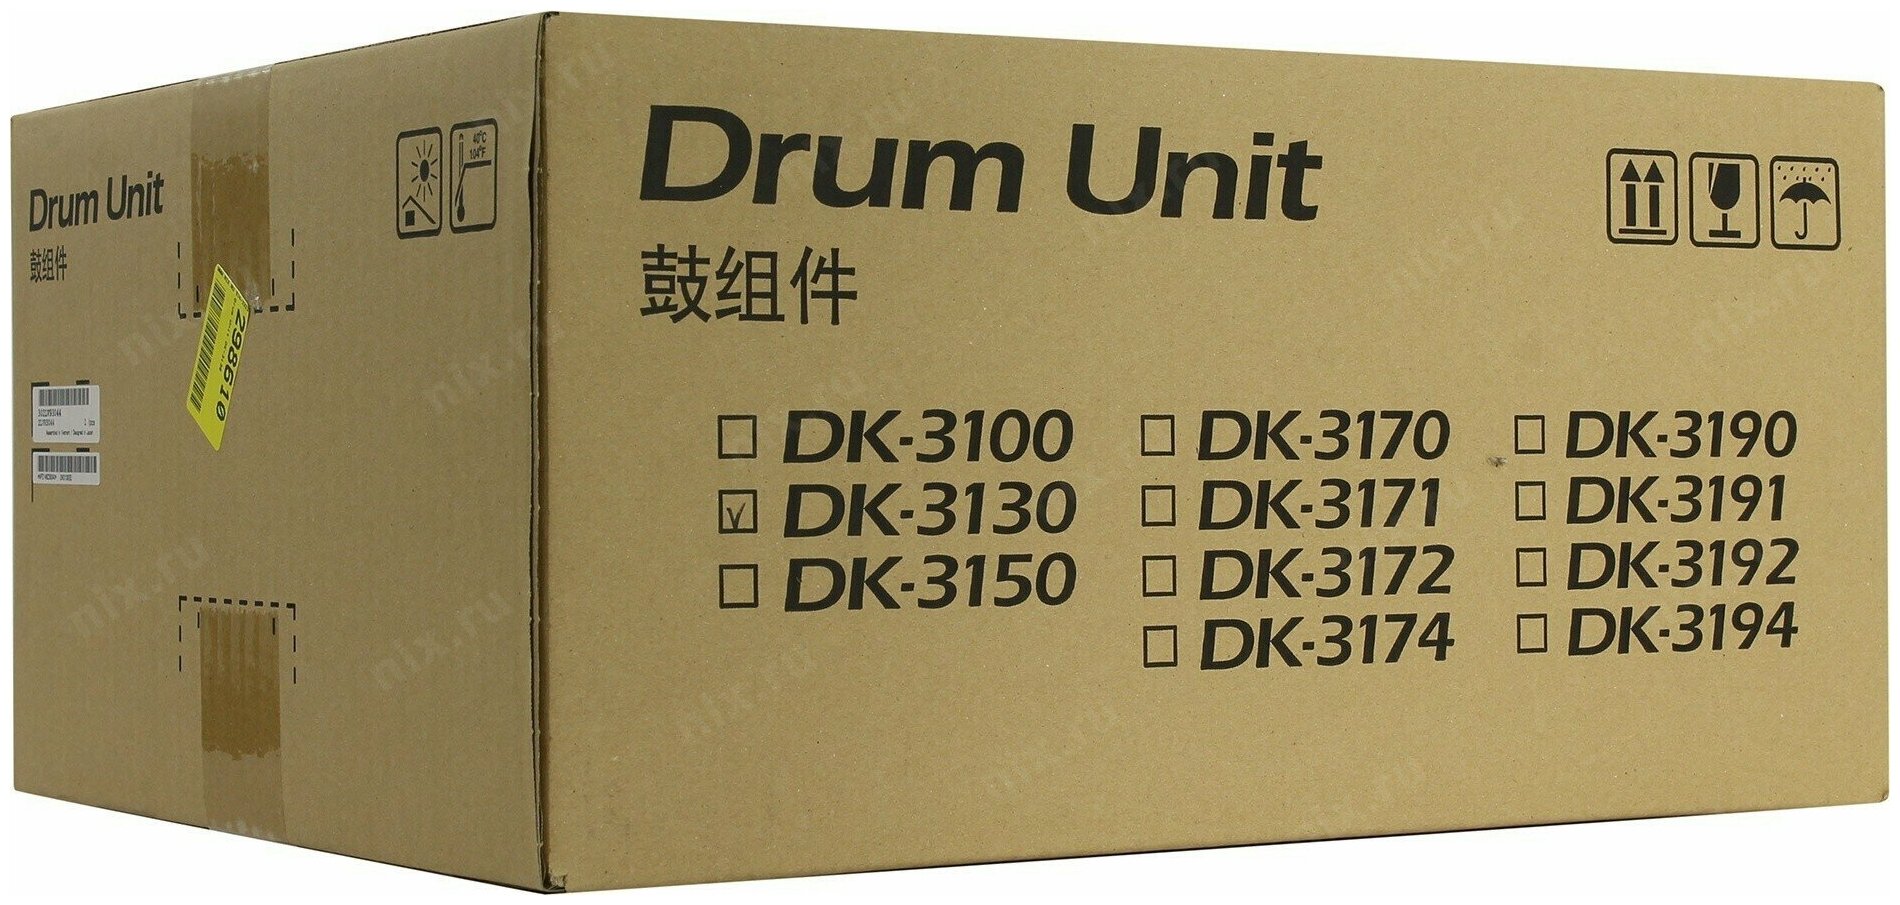 Блок фотобарабана (Drum-Unit) Kyocera DK-3190 оригинал черный